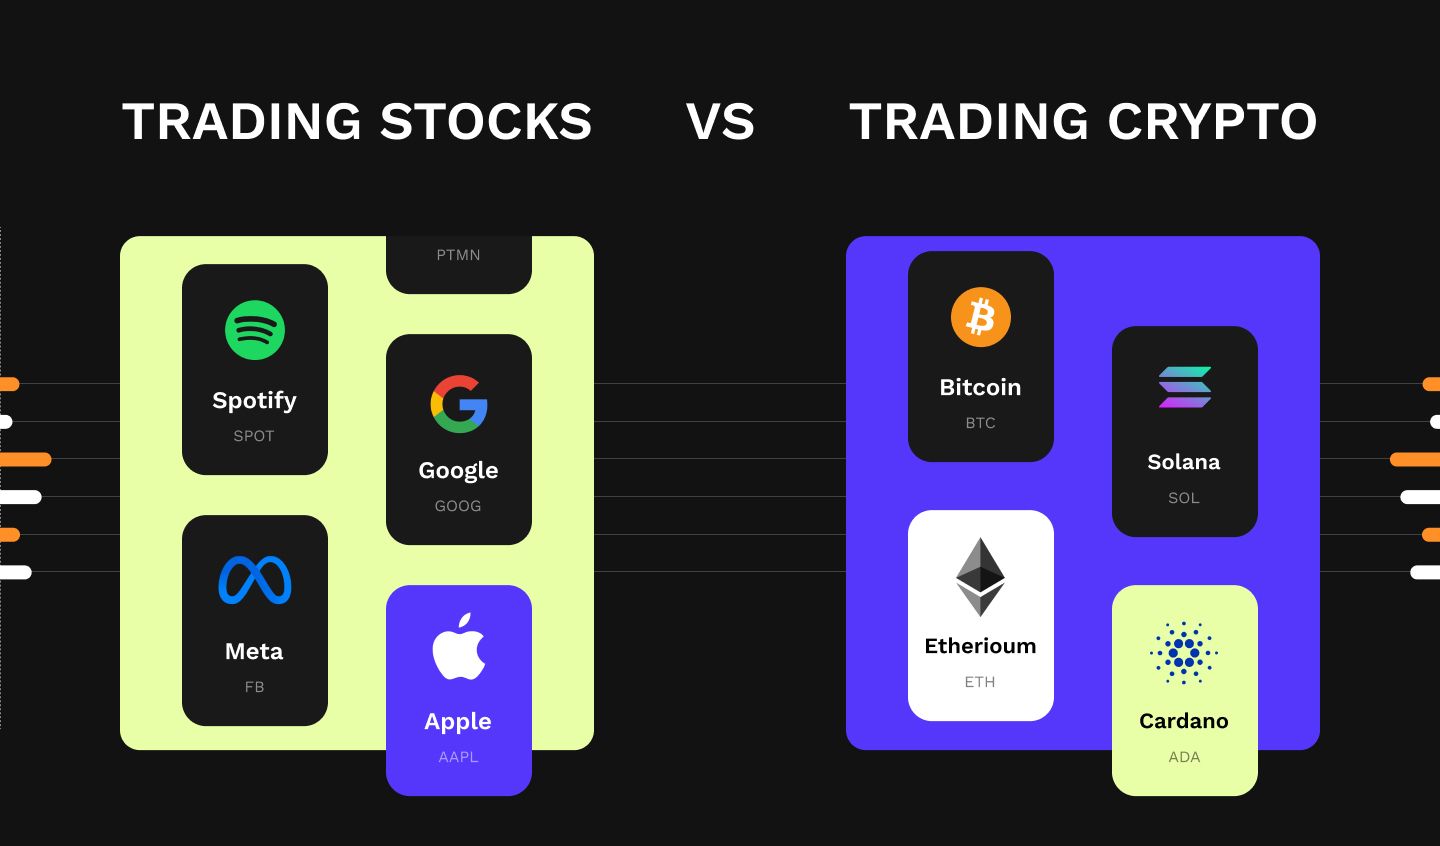 Trading stocks vs Trading crypto